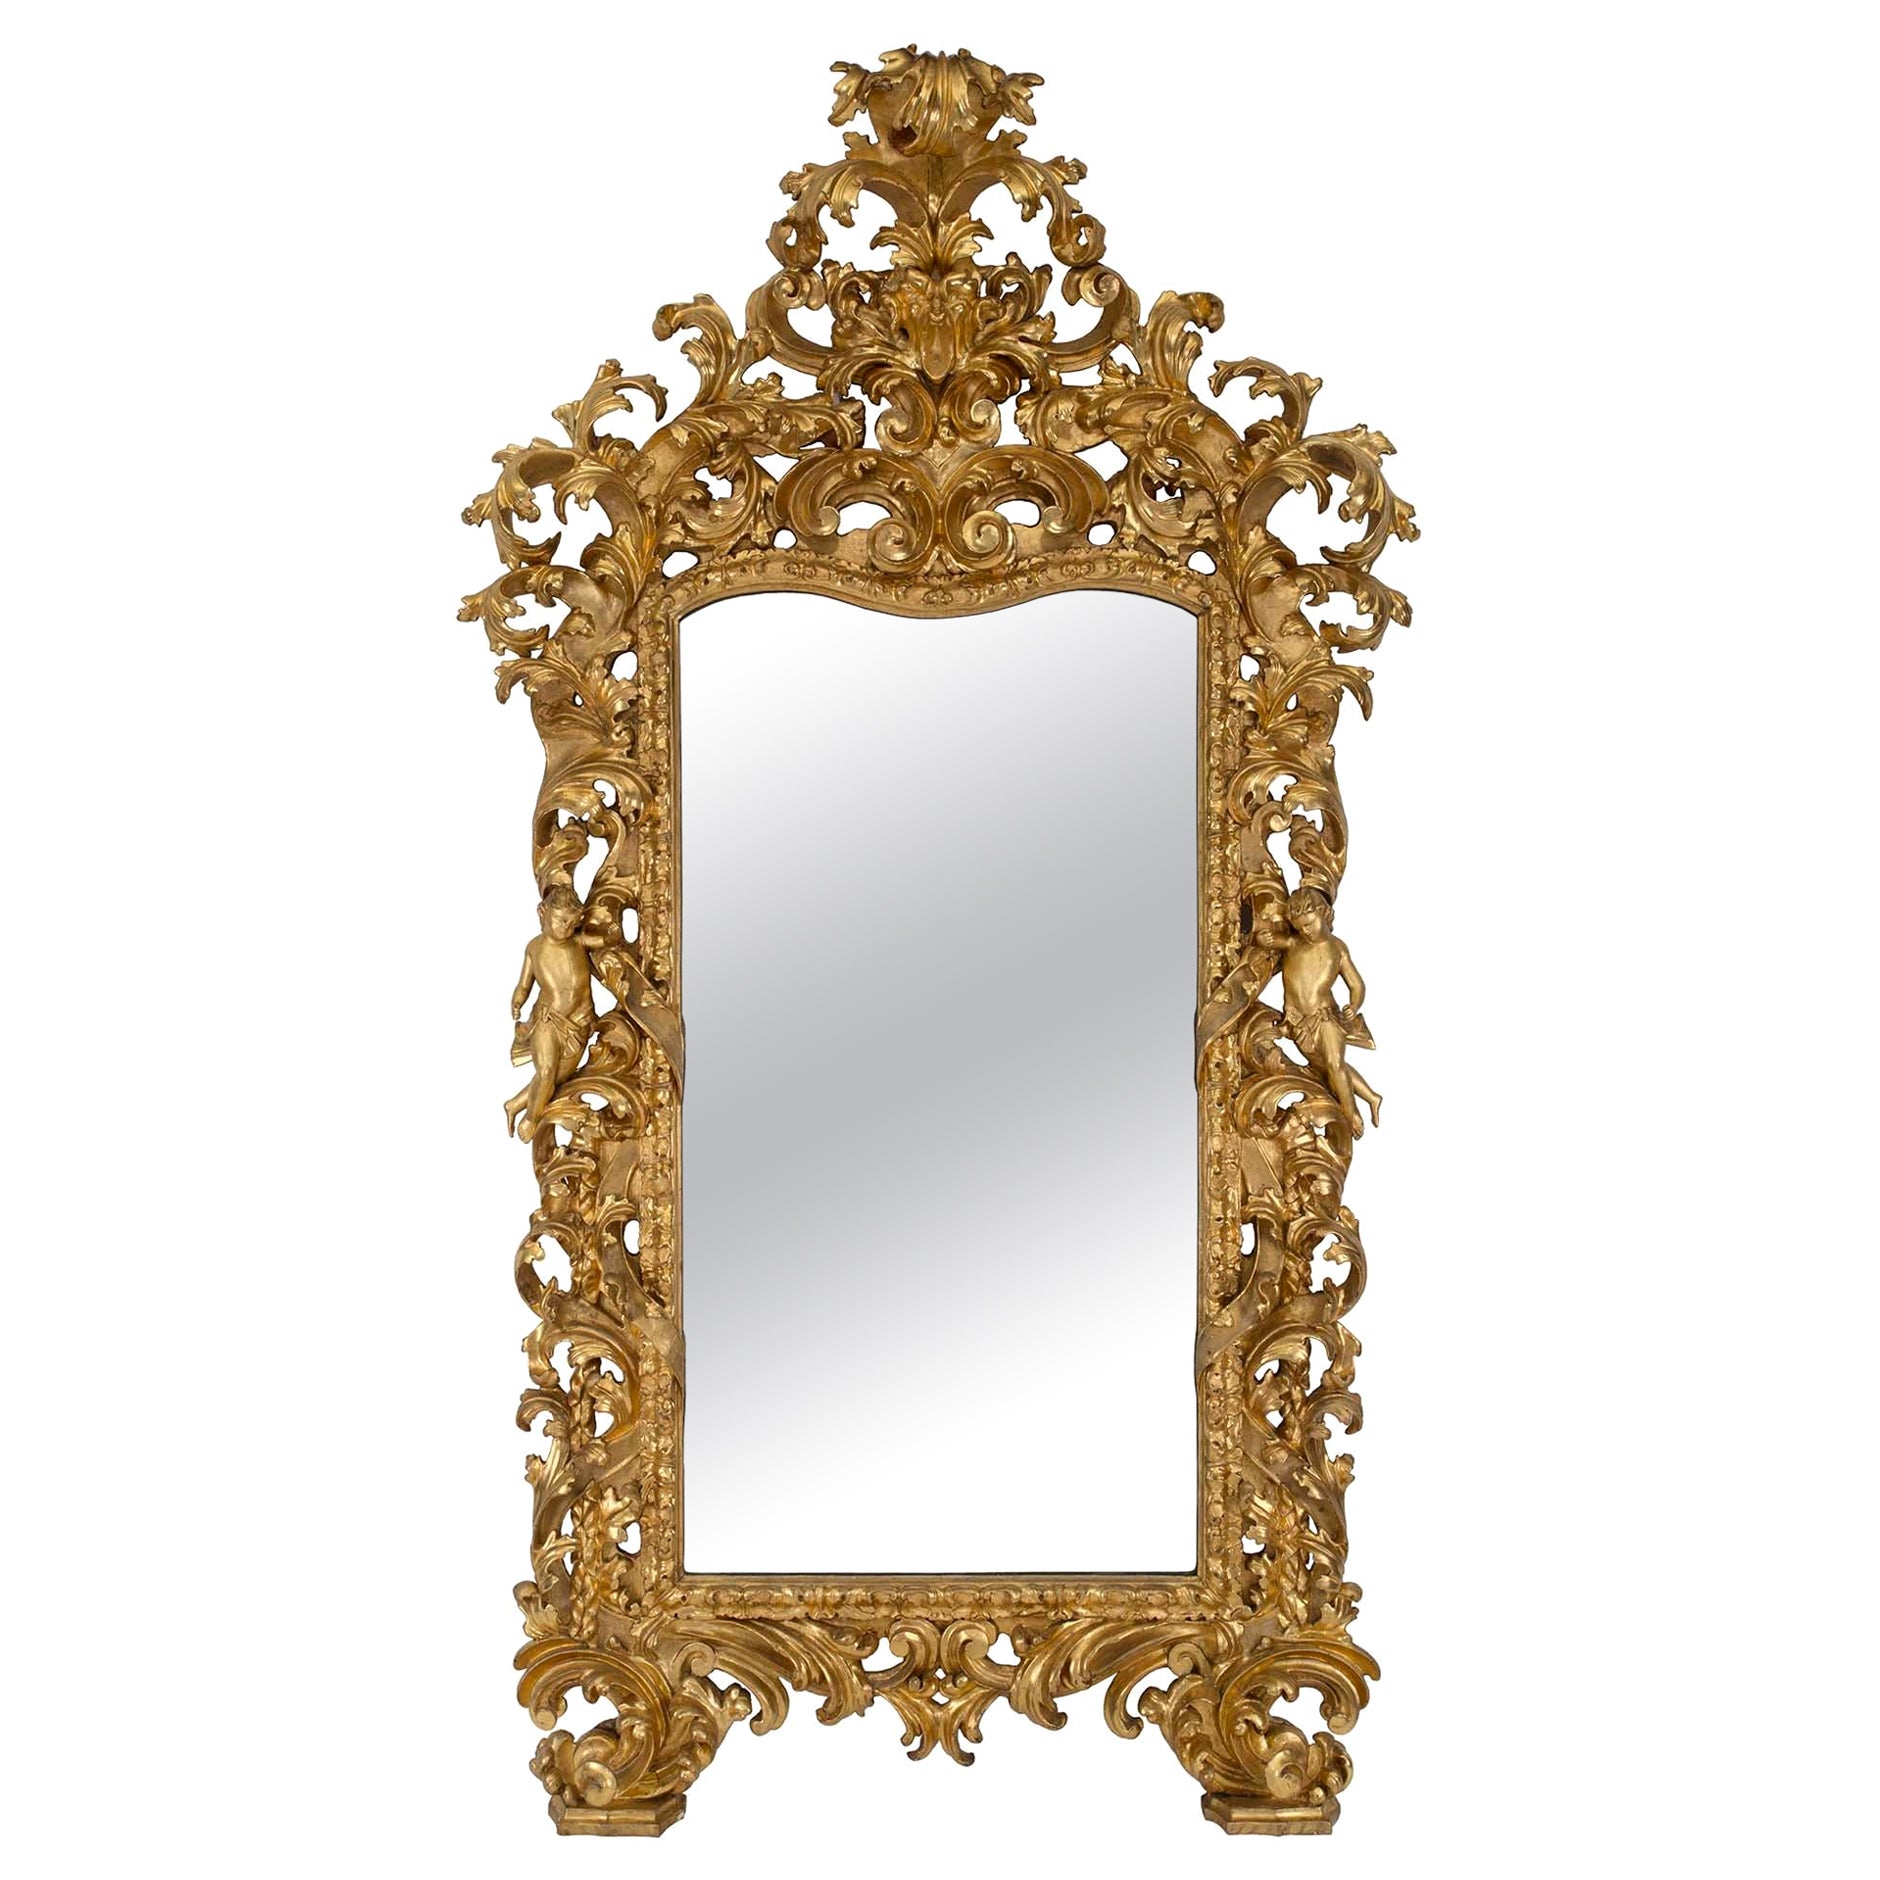 Miroir italien en bois doré baroque d'époque Louis XIV du 17ème siècle